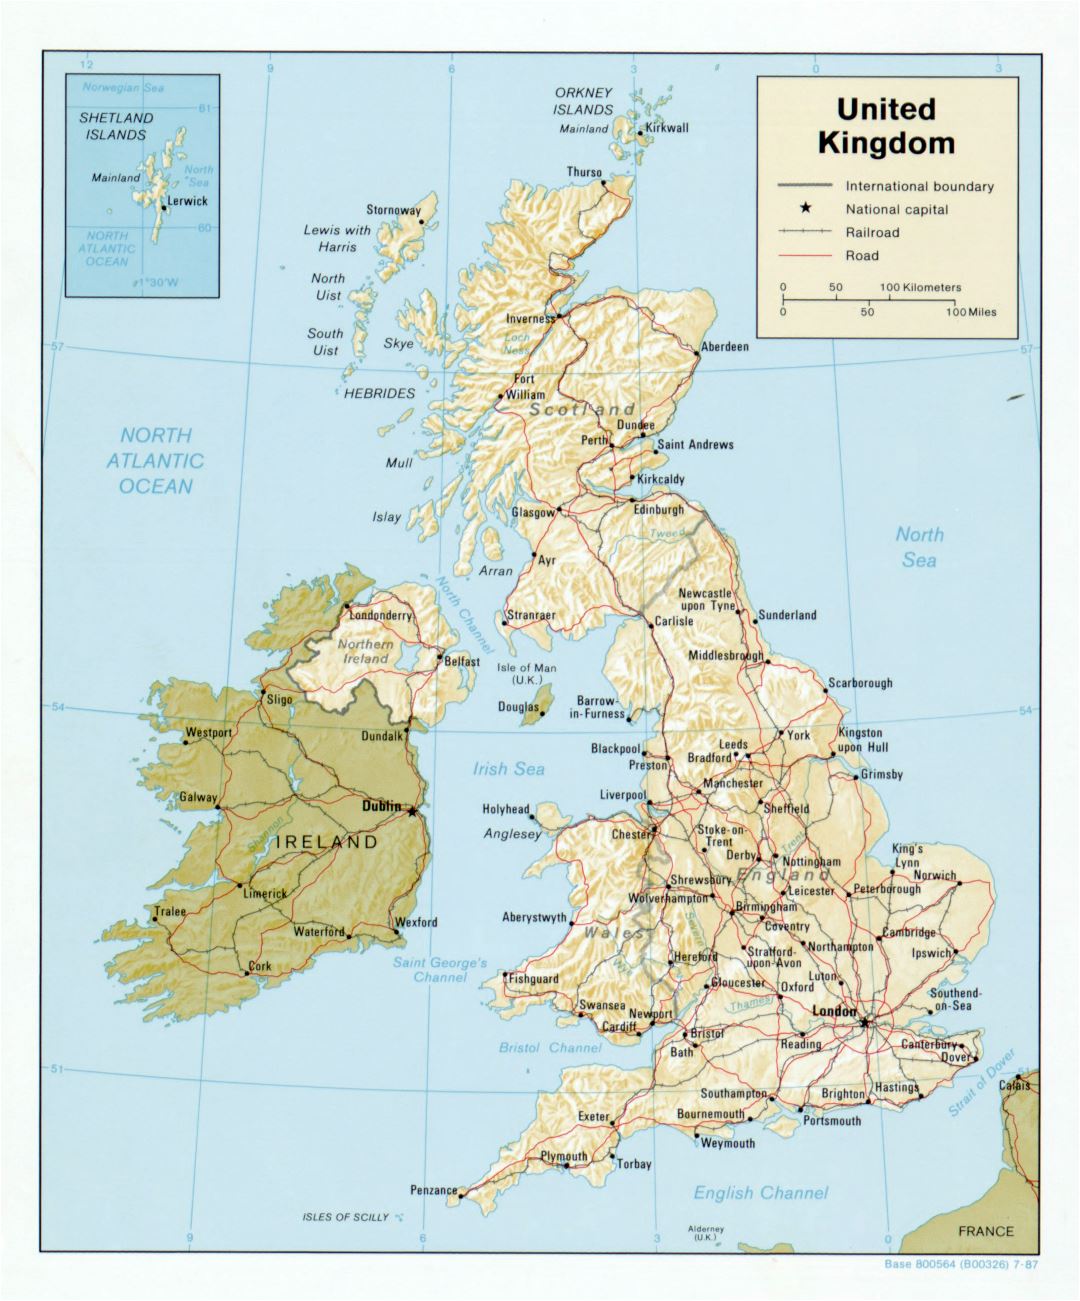 Grande detallado mapa político del Reino Unido con relieve, carreteras, ferrocarriles y ciudades principales - 1987